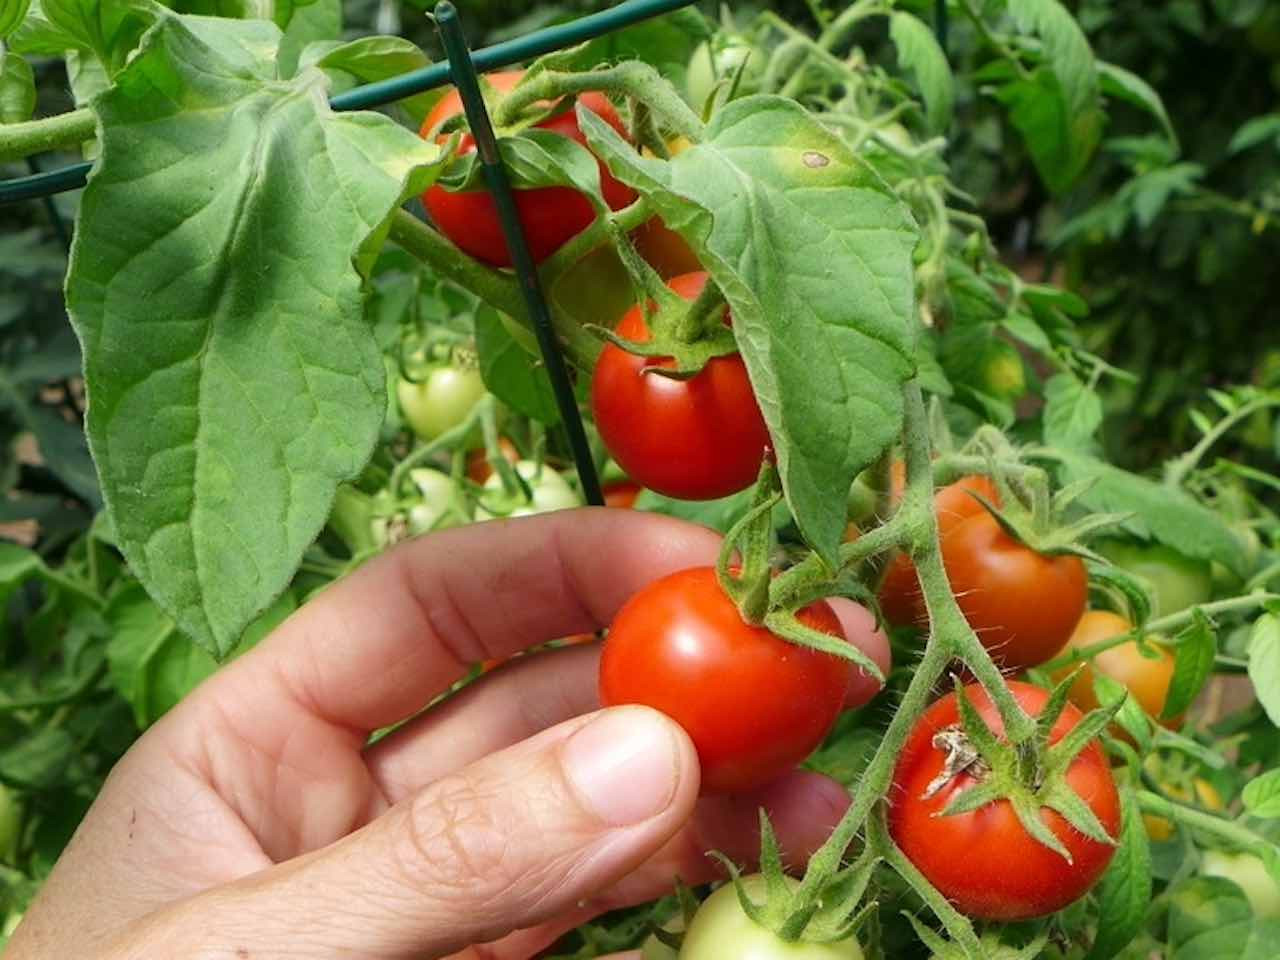 maskotka tomatoes on the vine